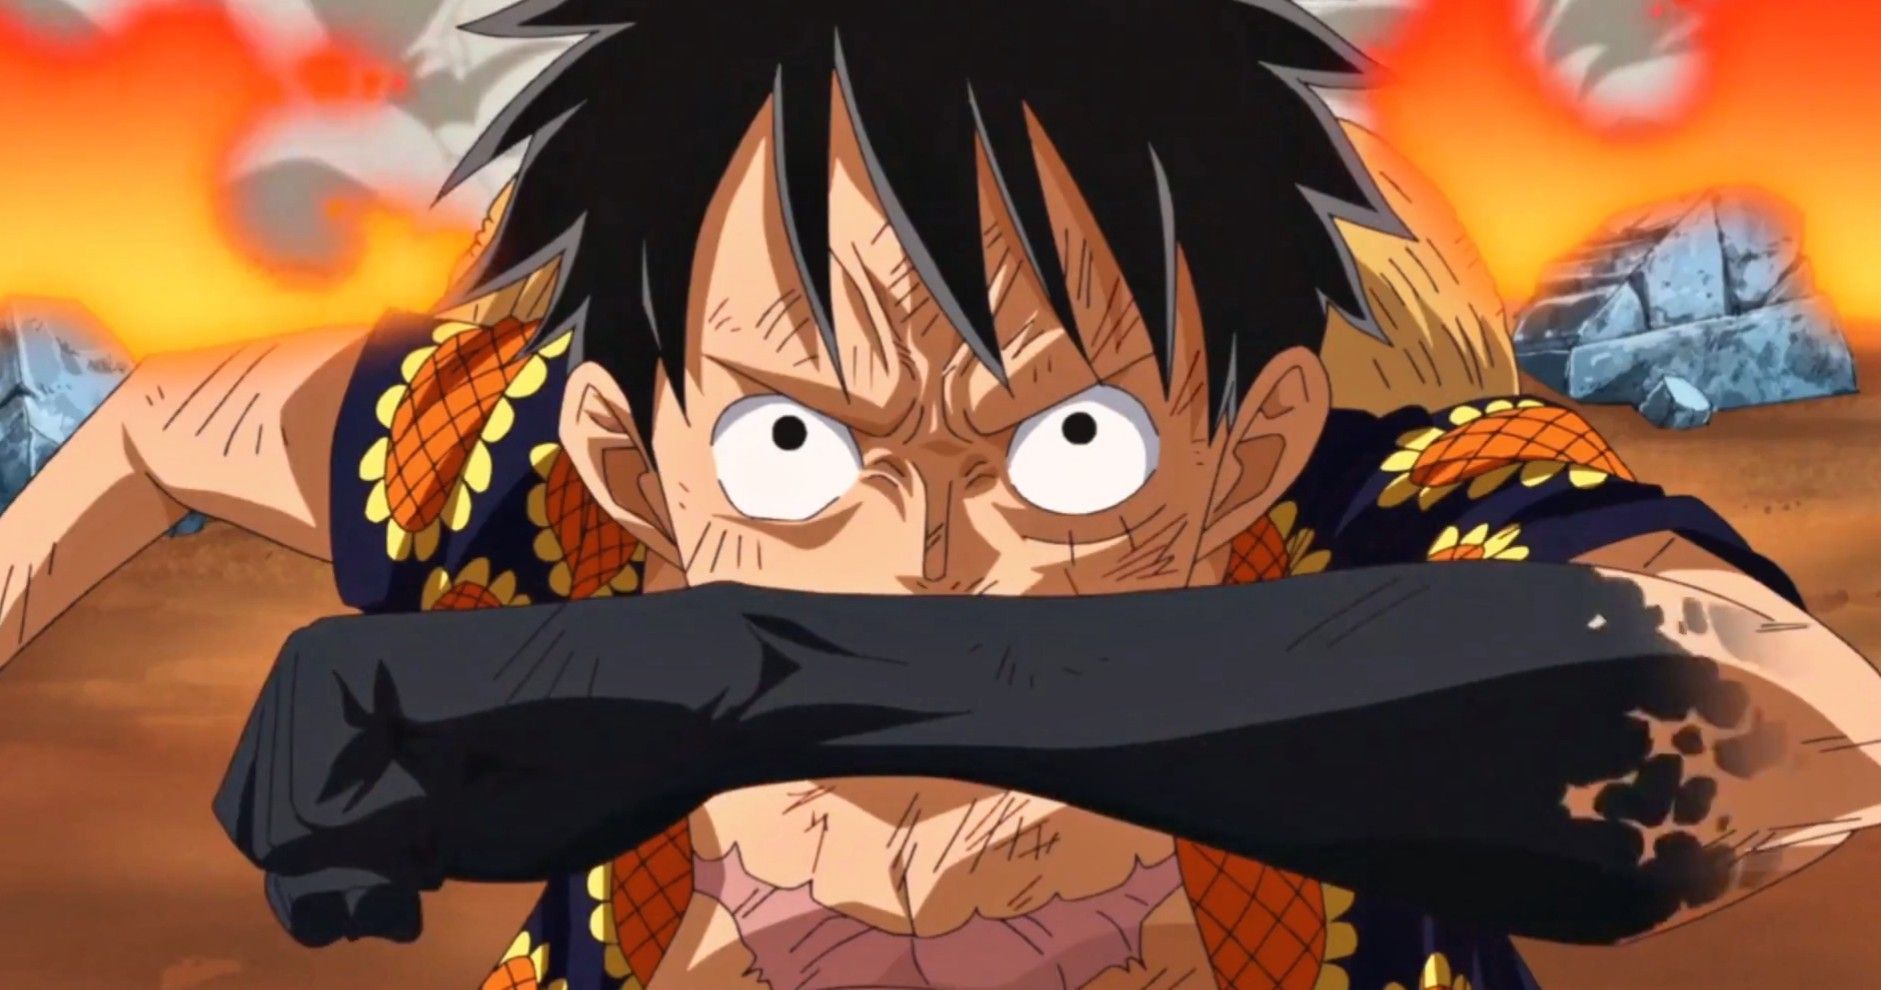 4) Dalam manga dan anime One Piece, siapa yang di tampilkan pertama kali menggunakan Haki?